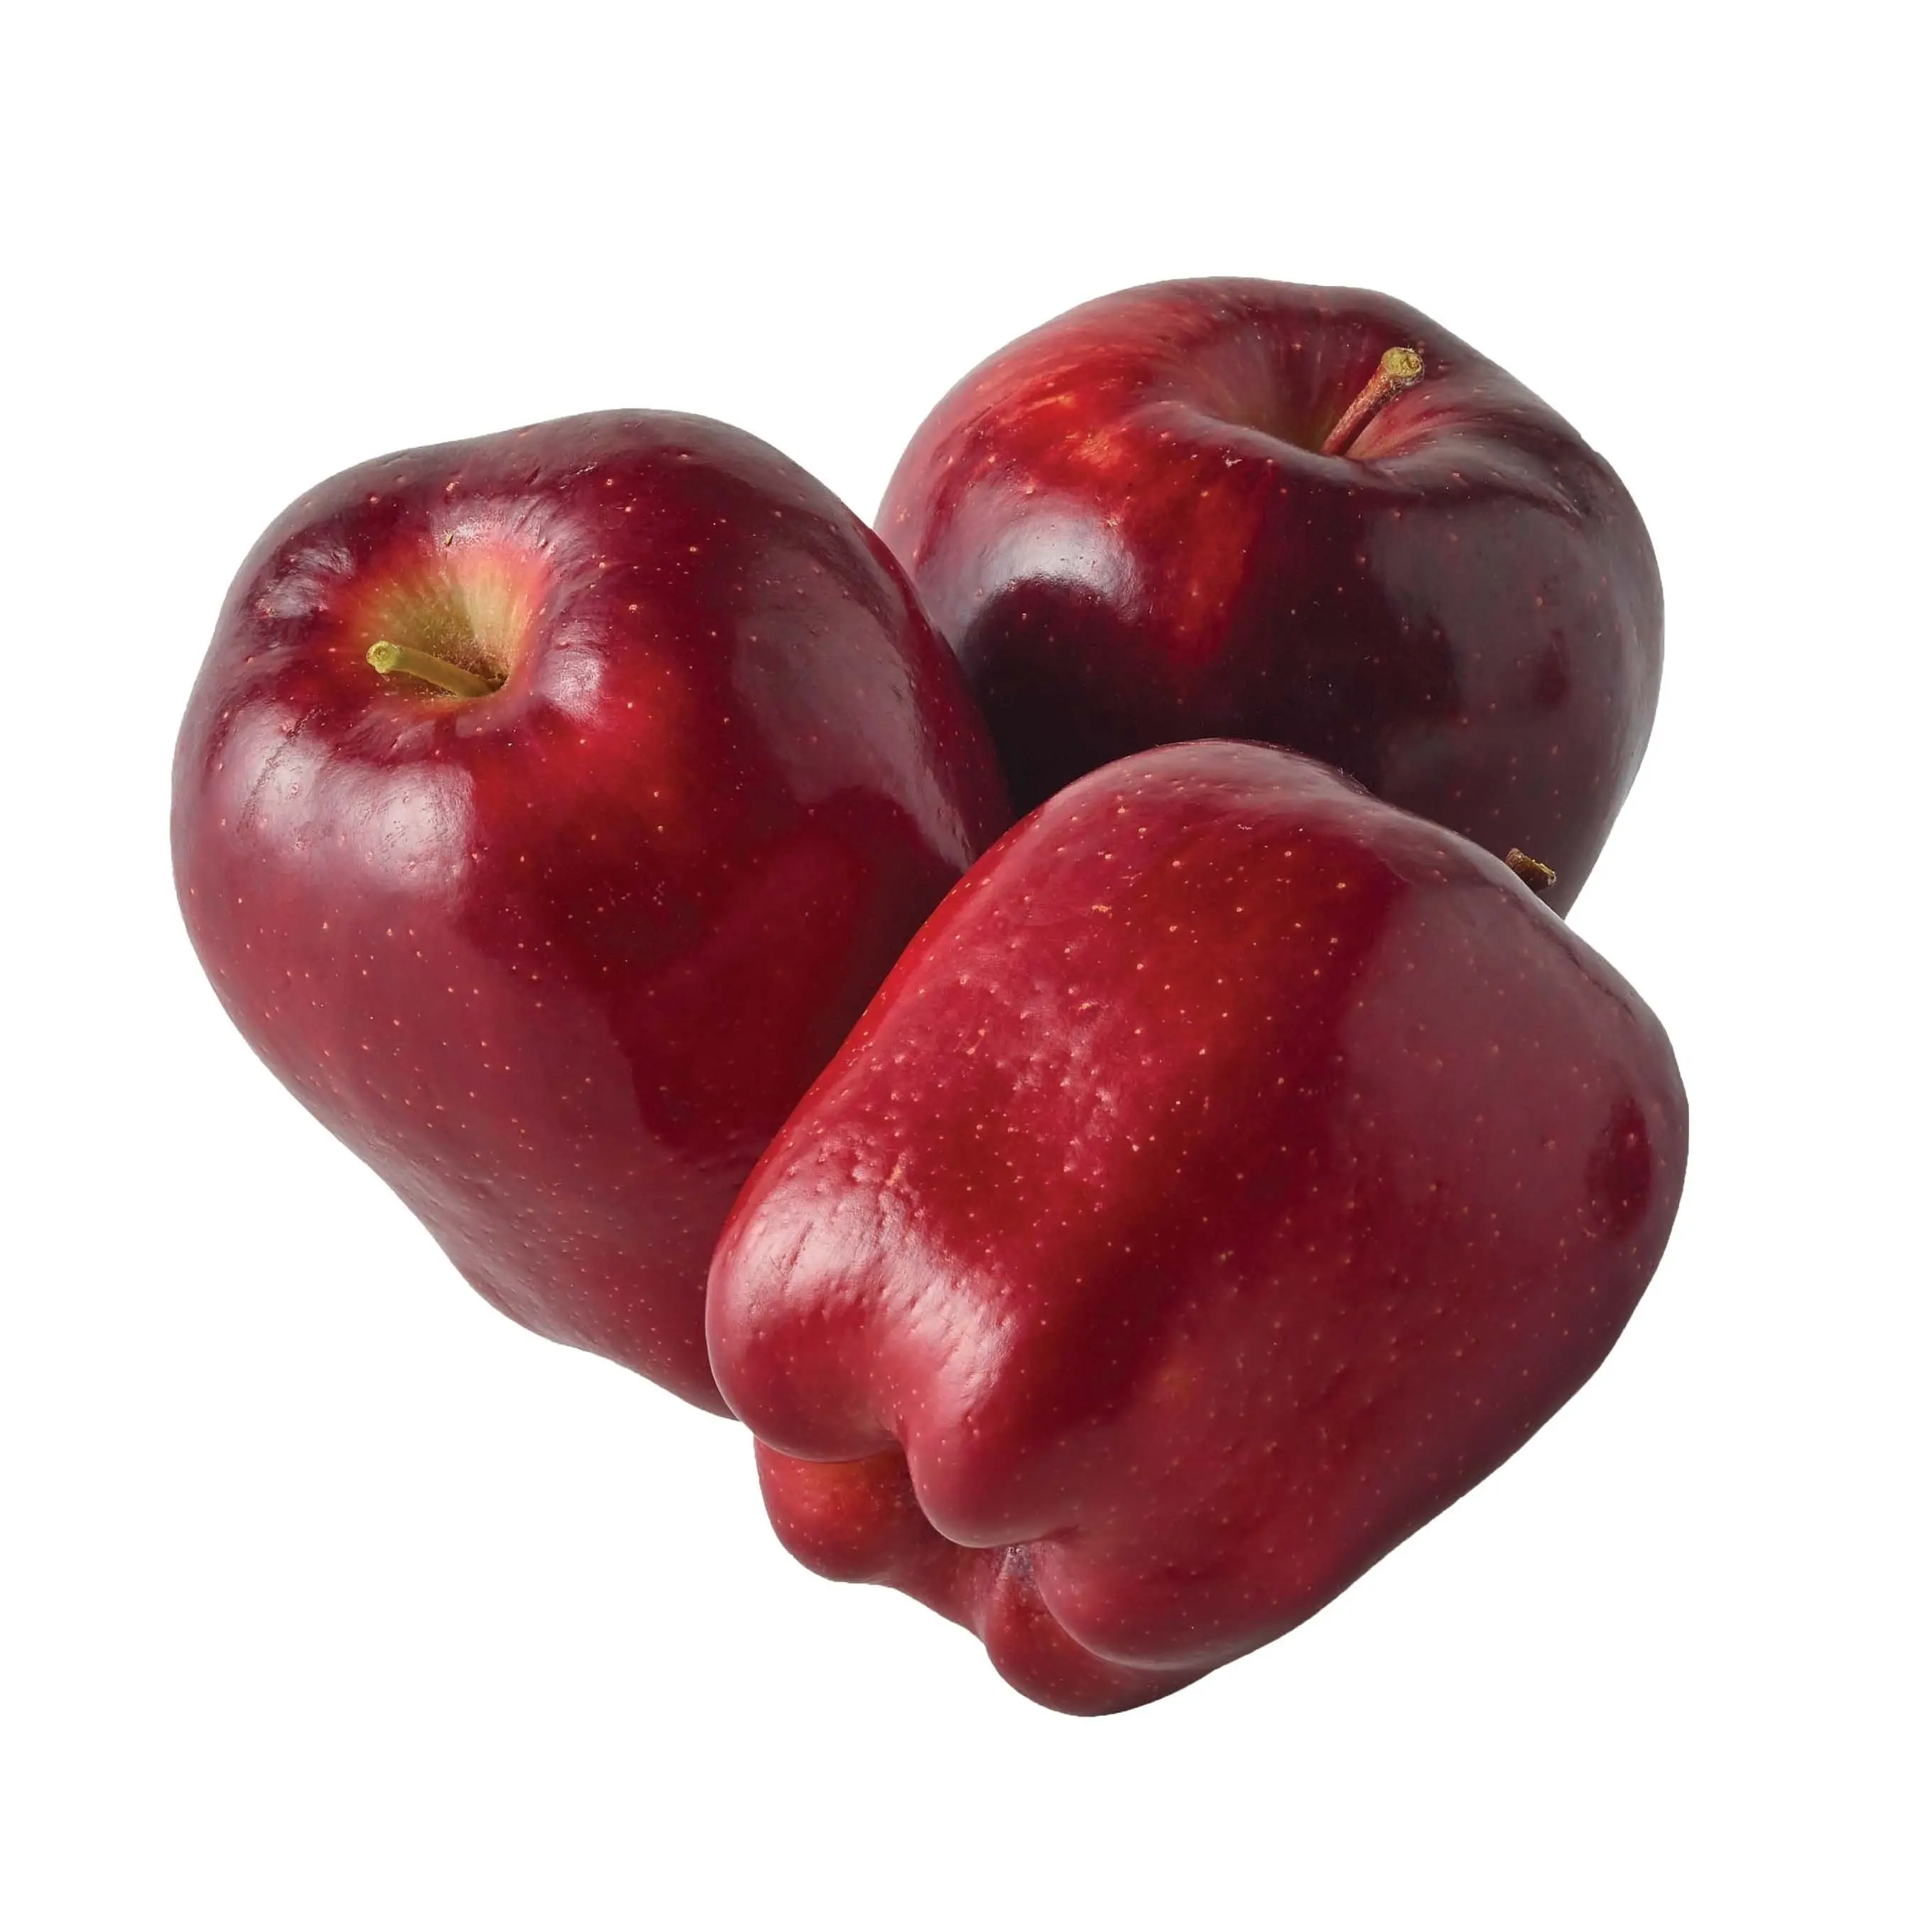 경쟁력있는 가격의 브라질 제조업체 유기농 사과에서 고급 새로운 작물 천연 신선한 빨강/녹색 사과